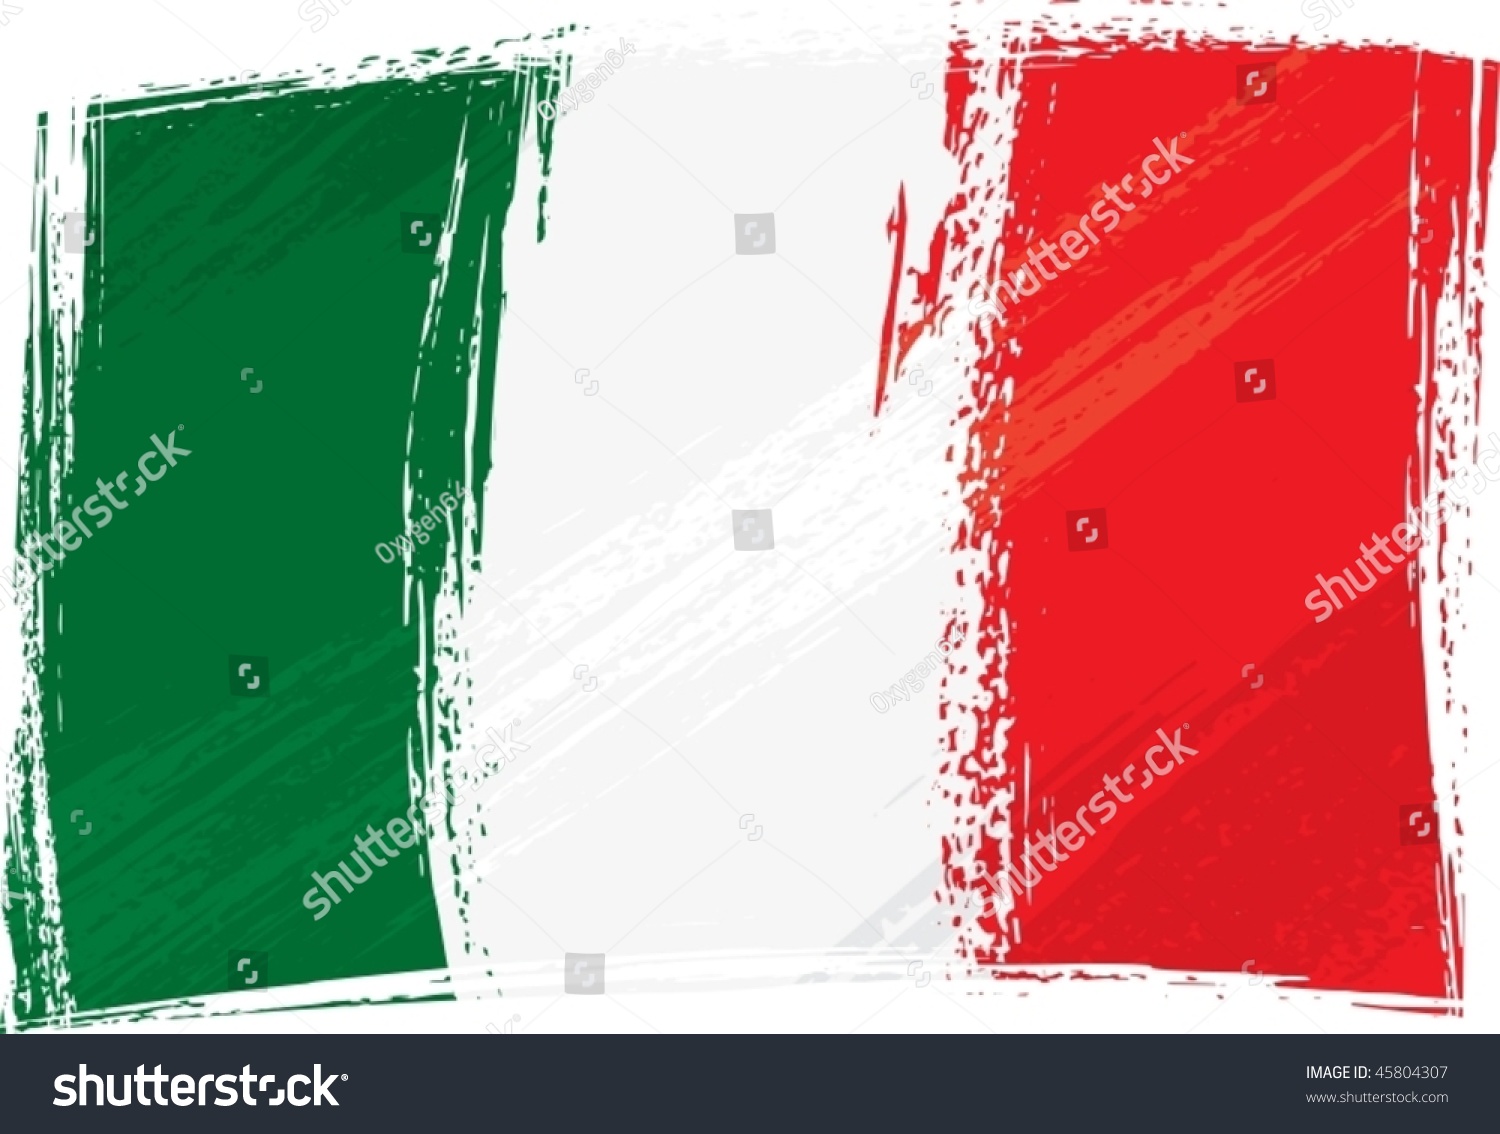 Grunge Italy Flag Stock Vector Illustration 45804307 : Shutterstock